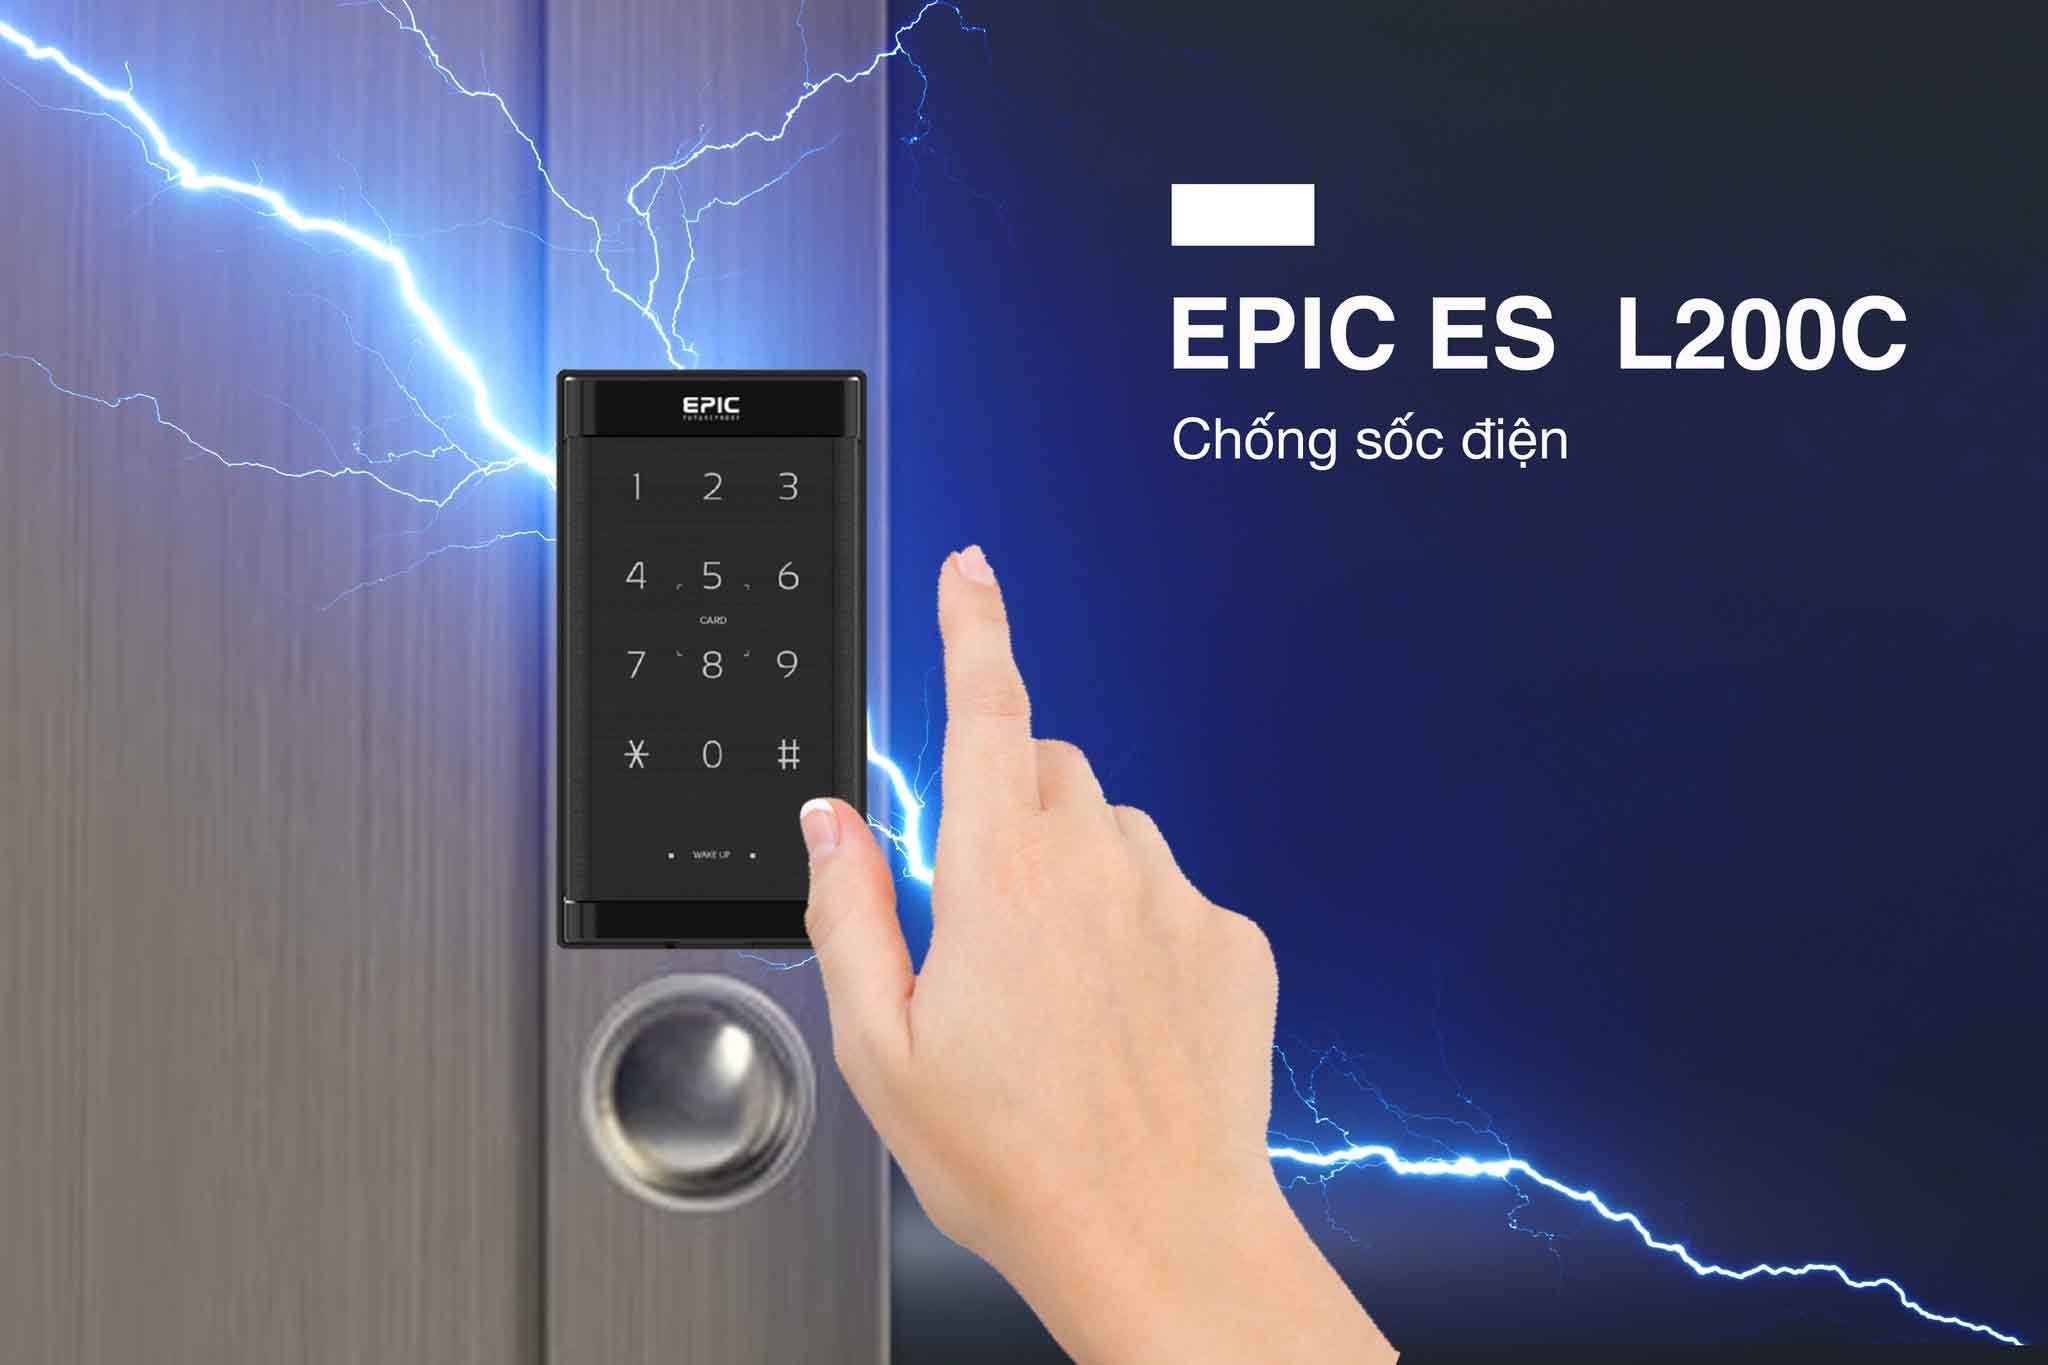 Khóa tủ đồ điện tử Epic ES L200C